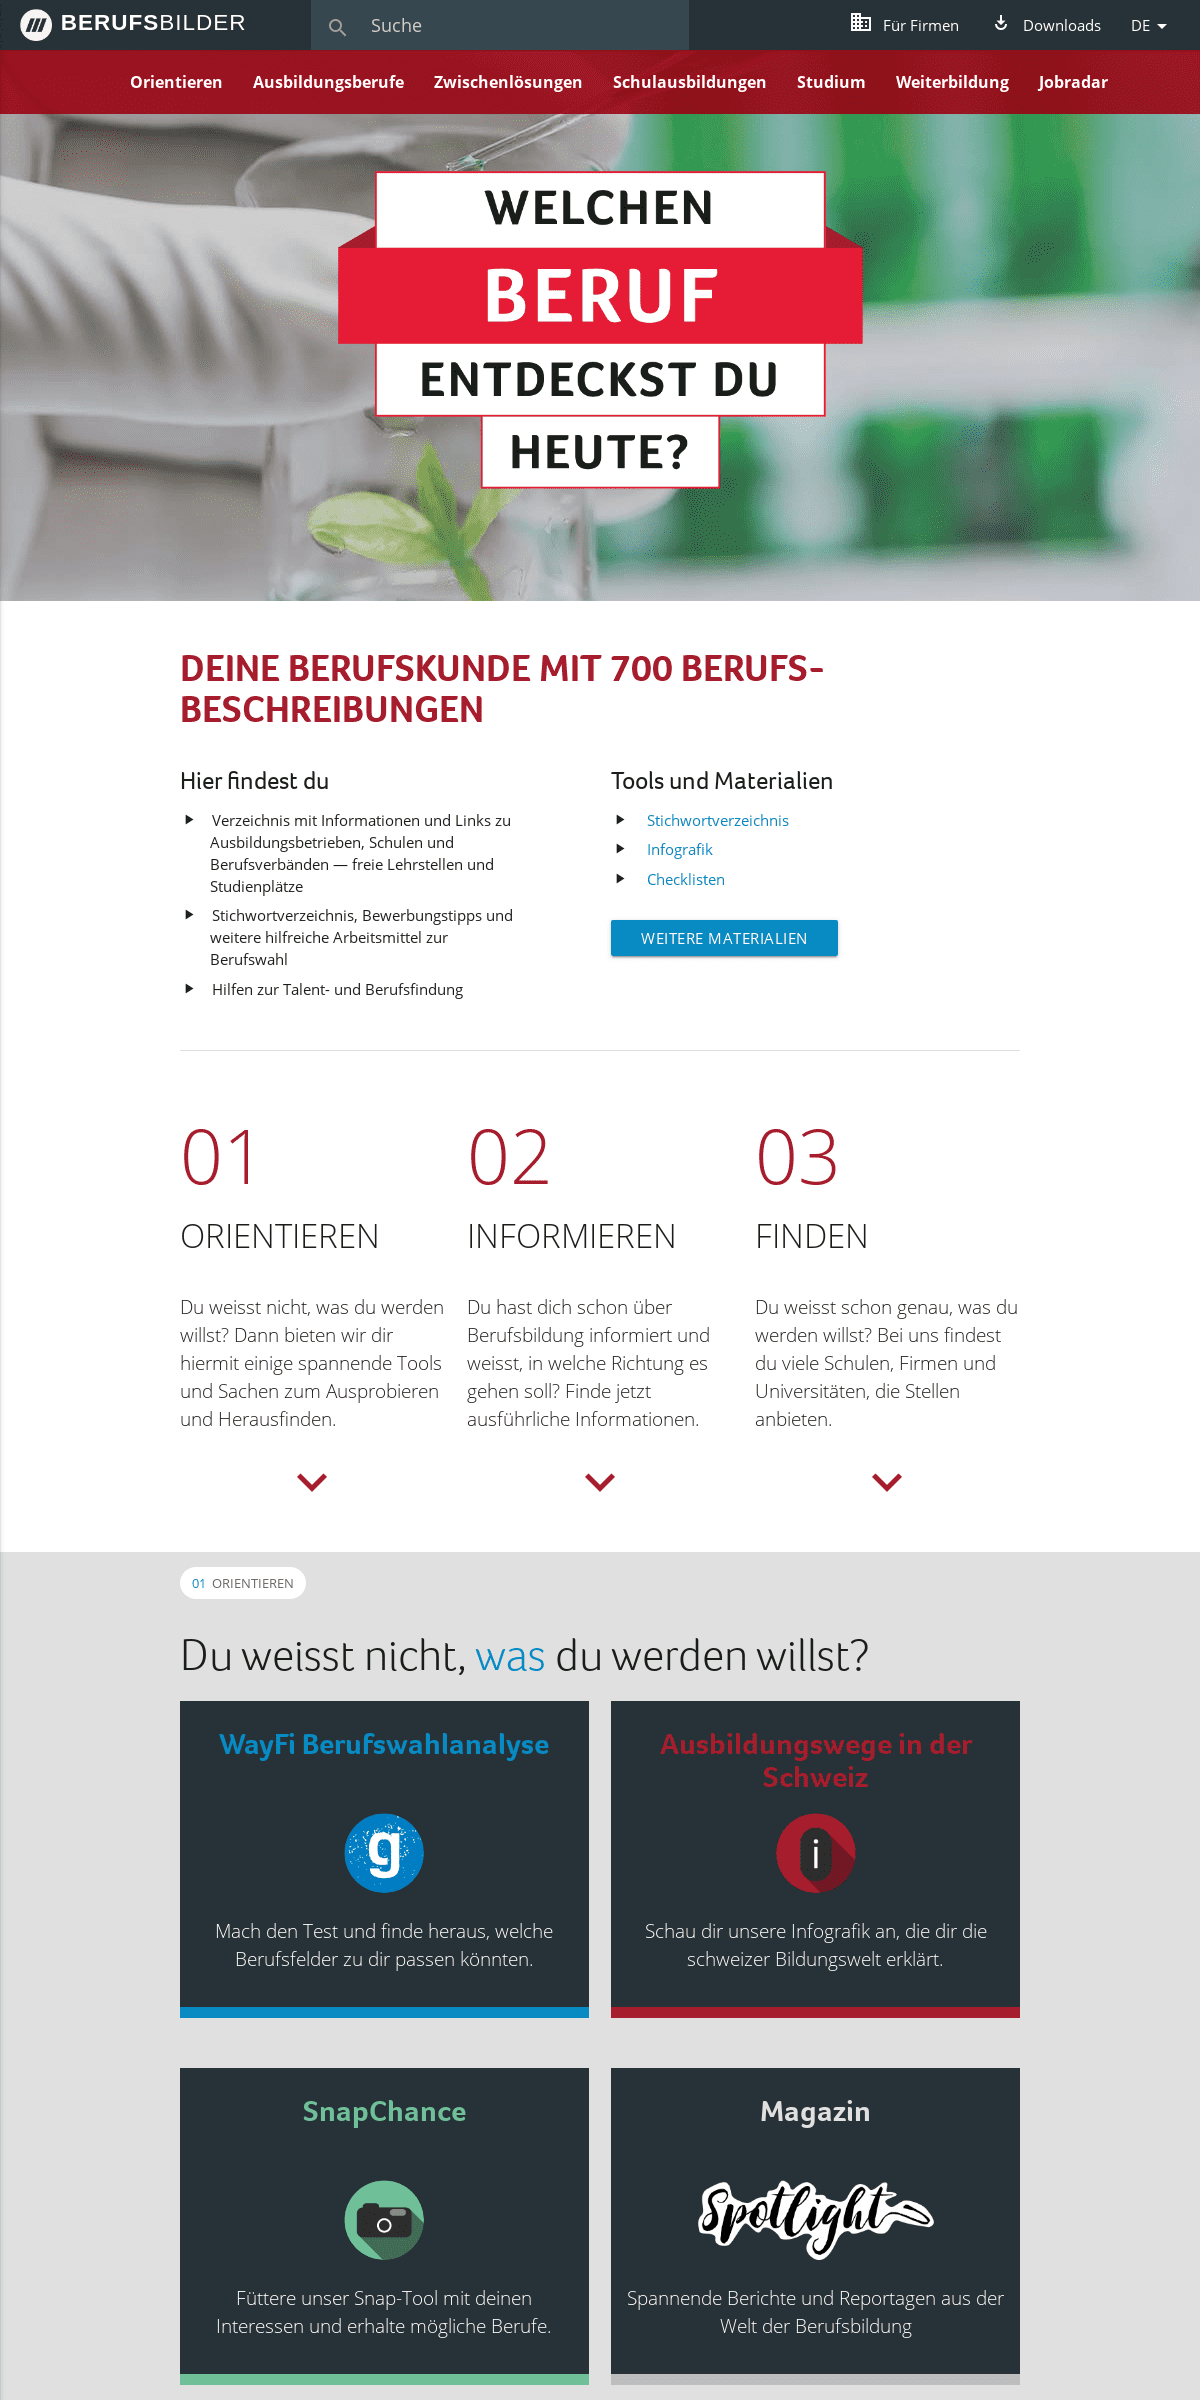 A complete backup of berufskunde.com